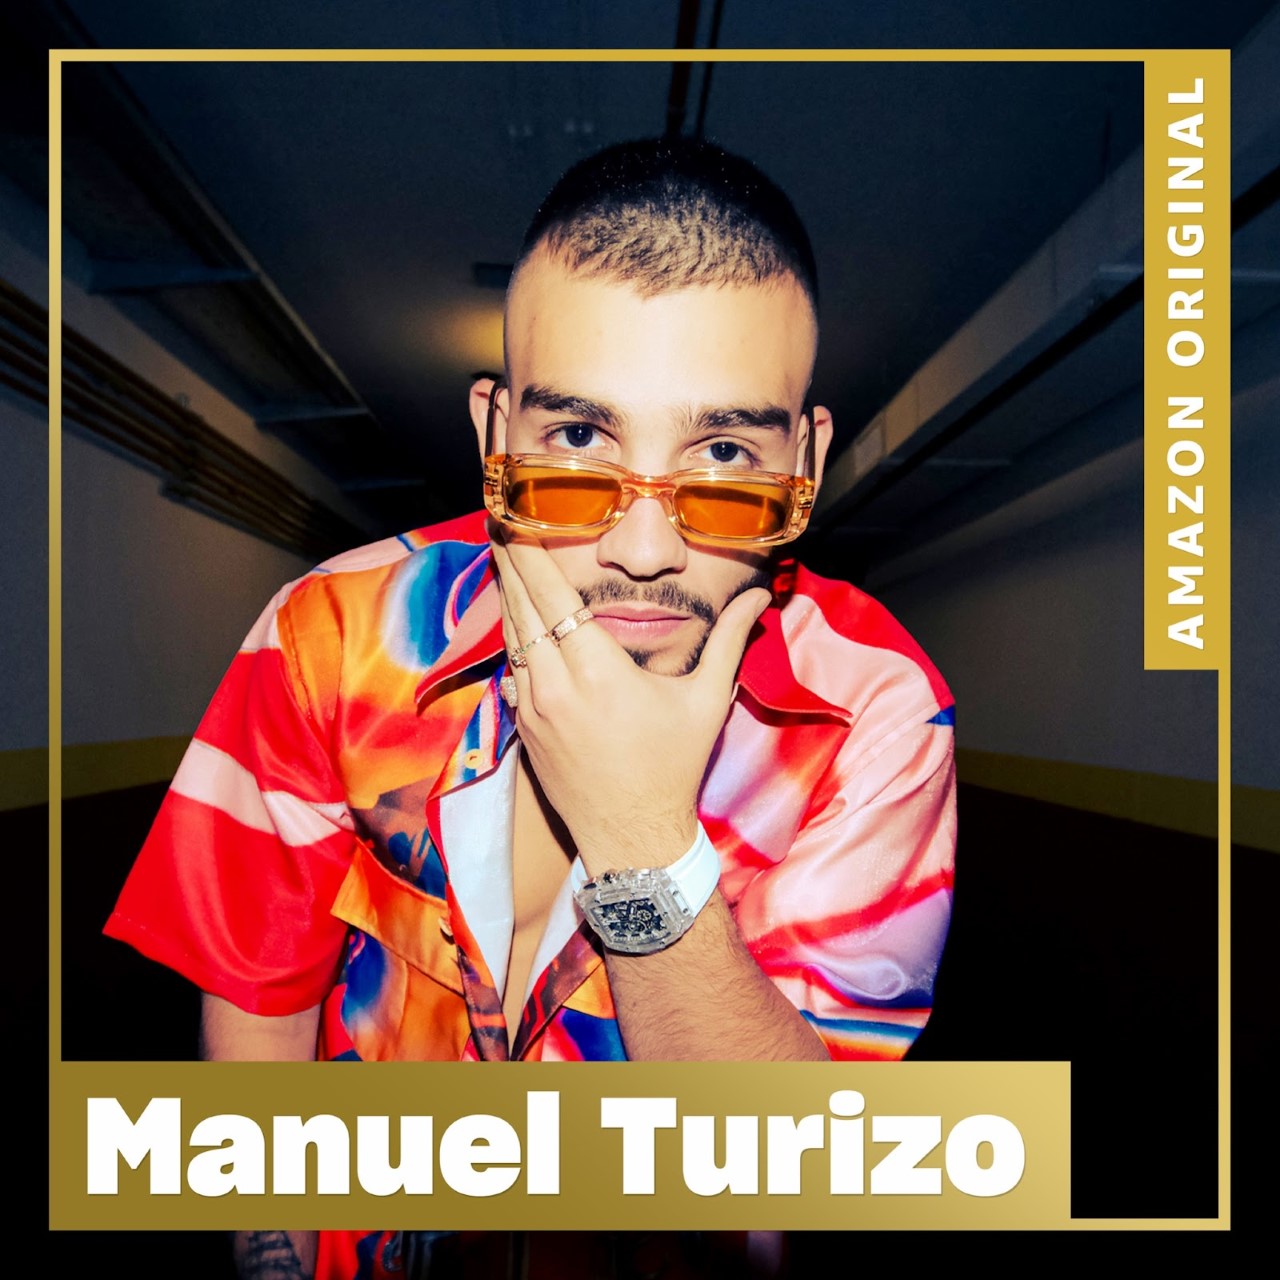 MANUEL TURIZO encabeza la lista de artista que Amazon Music presenta temas de Navidad